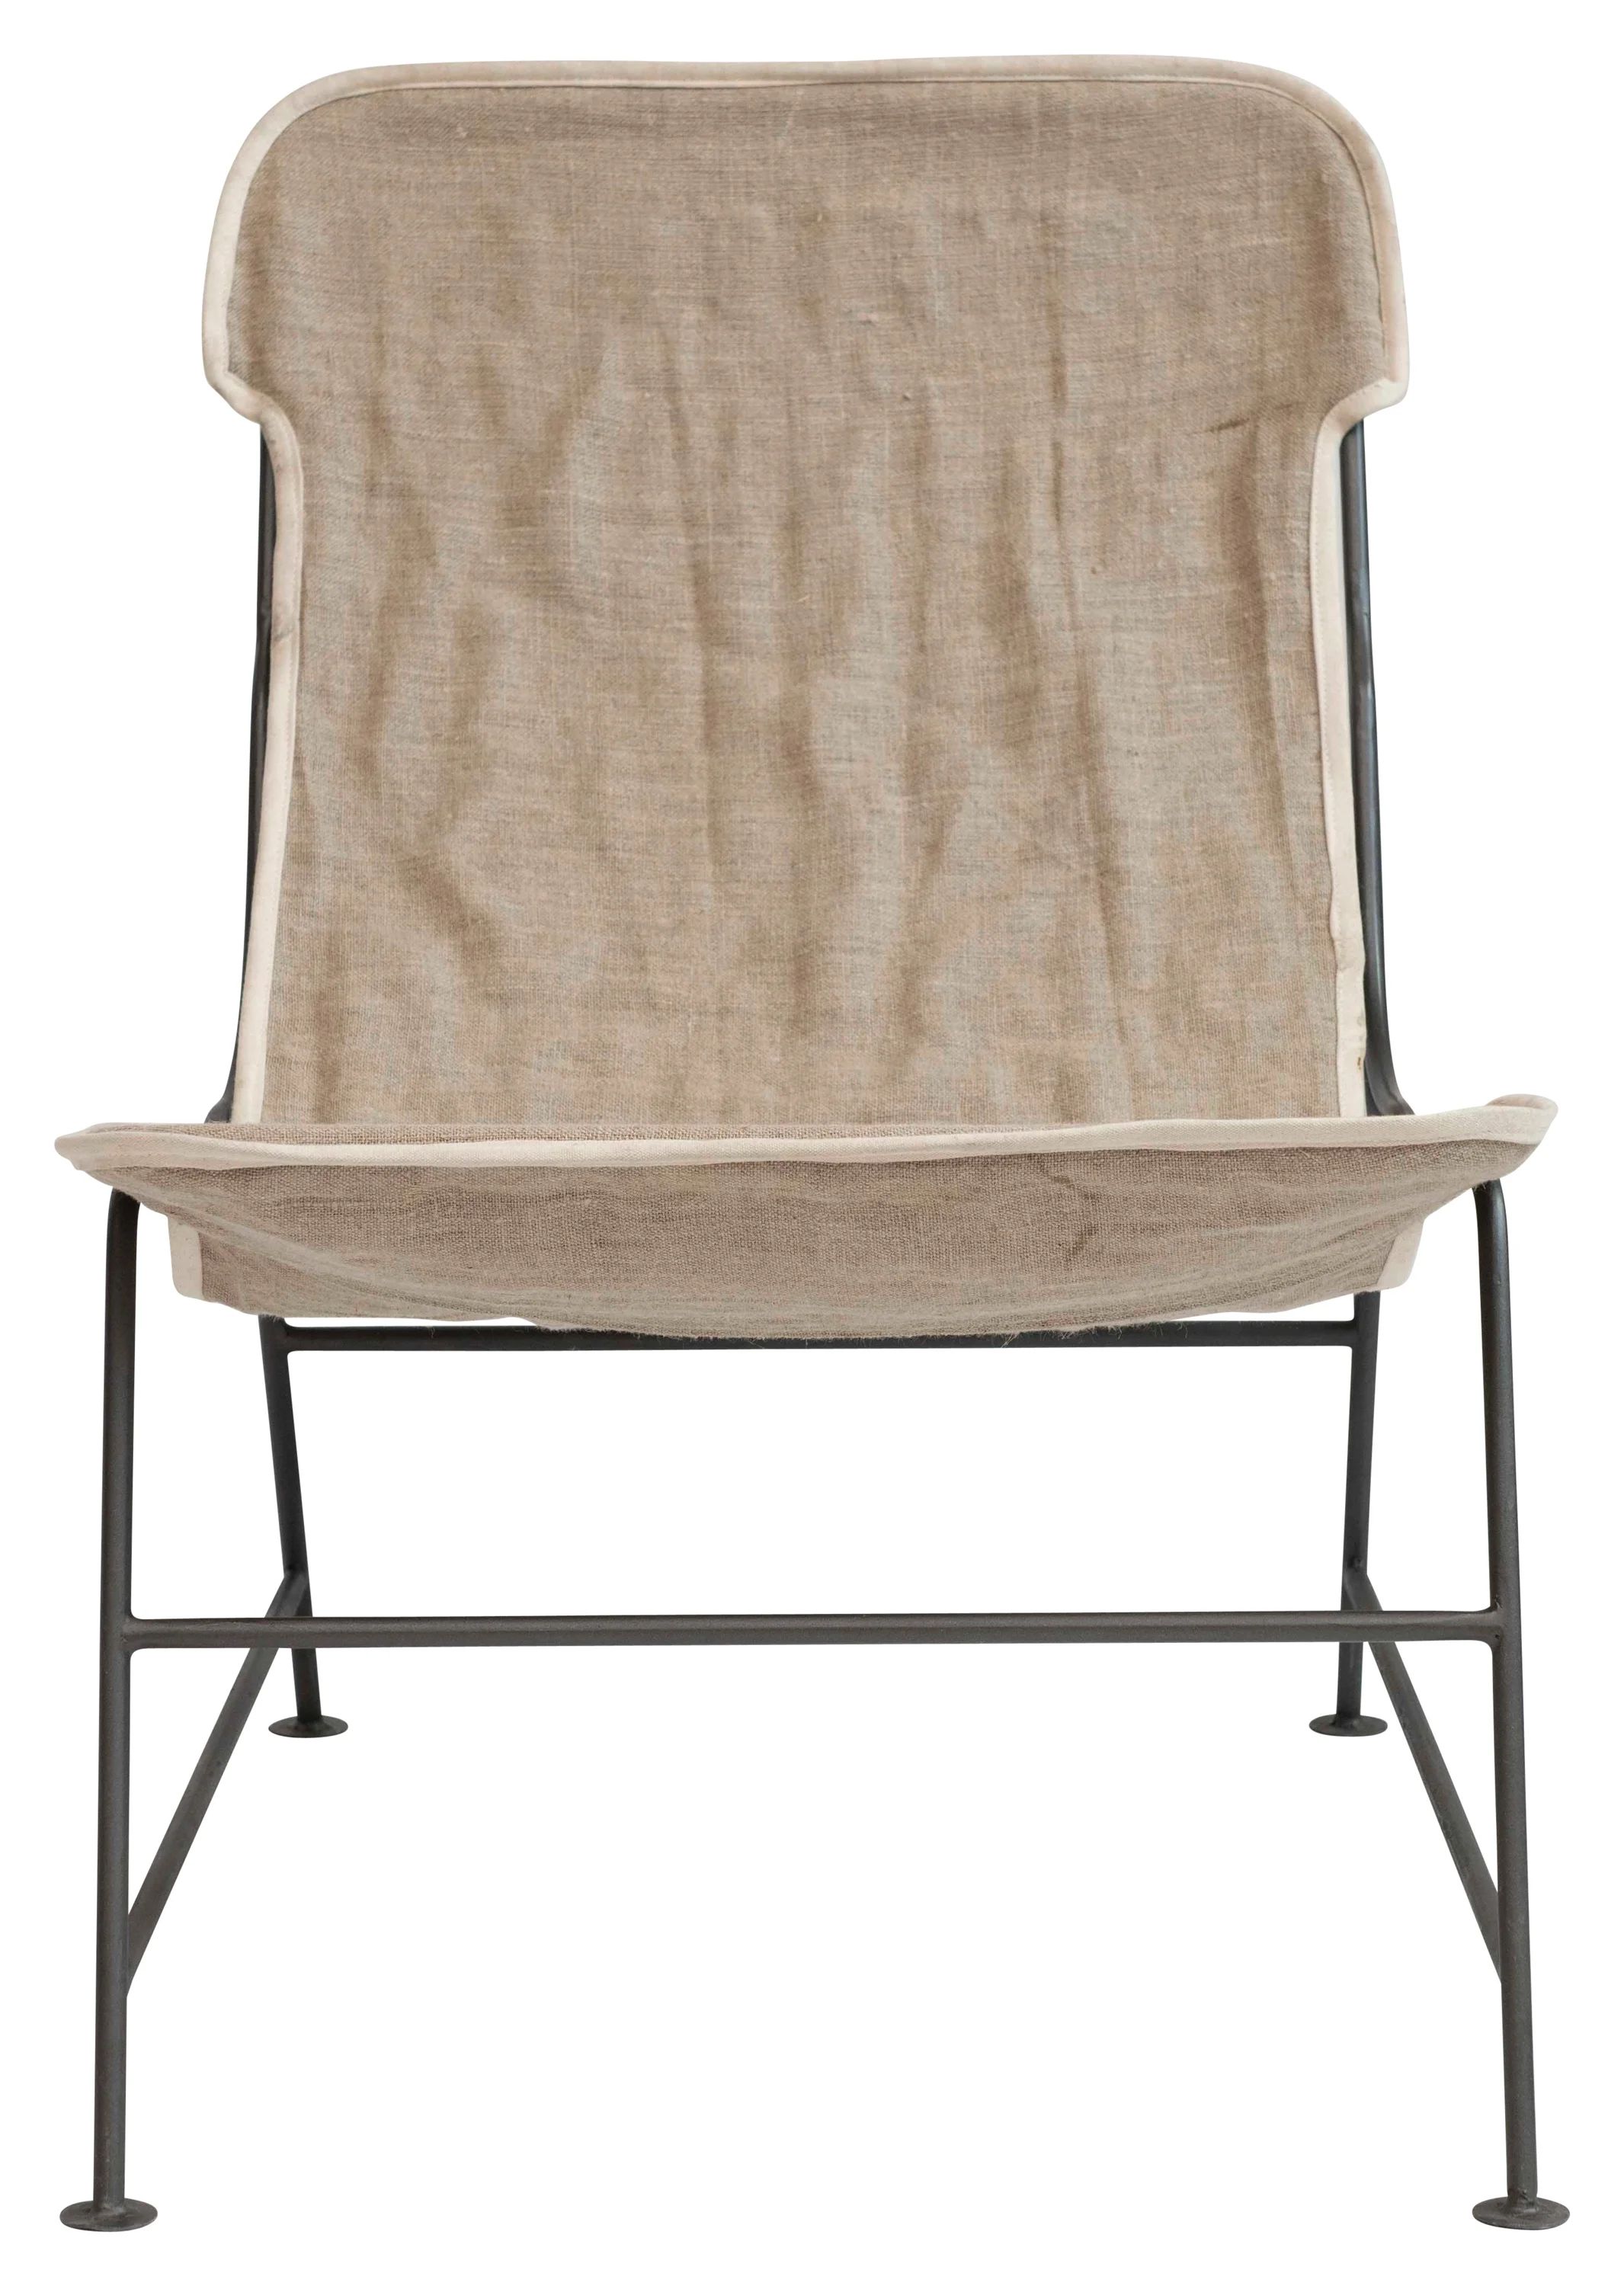 Desert Fields Reclined Linen Sling Chair with Metal Frame | Walmart (US)